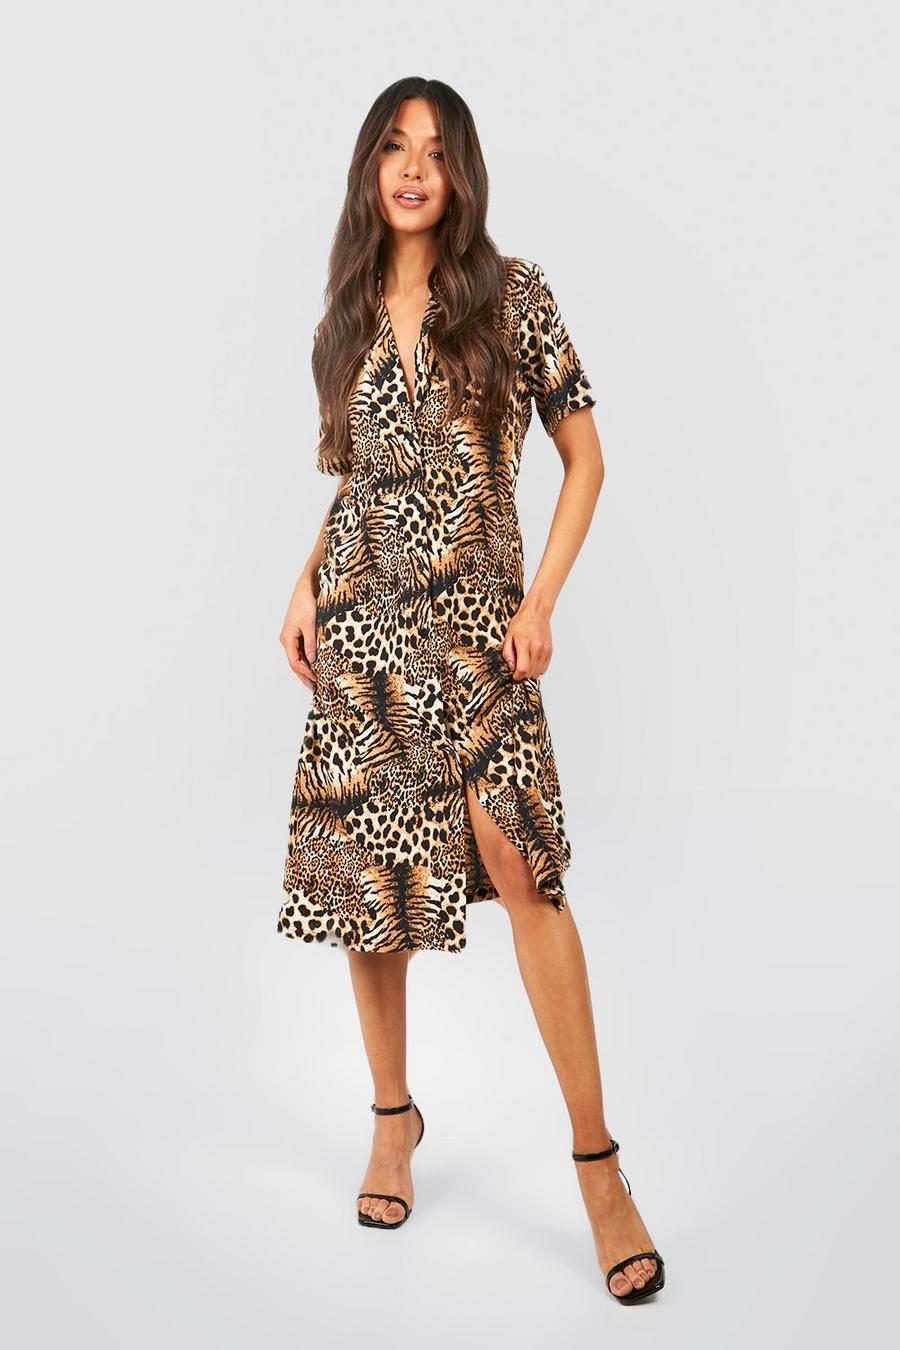 Luipaard Midi-jurk in de stijl van een shirt met een mix van tijger- en luipaardprint